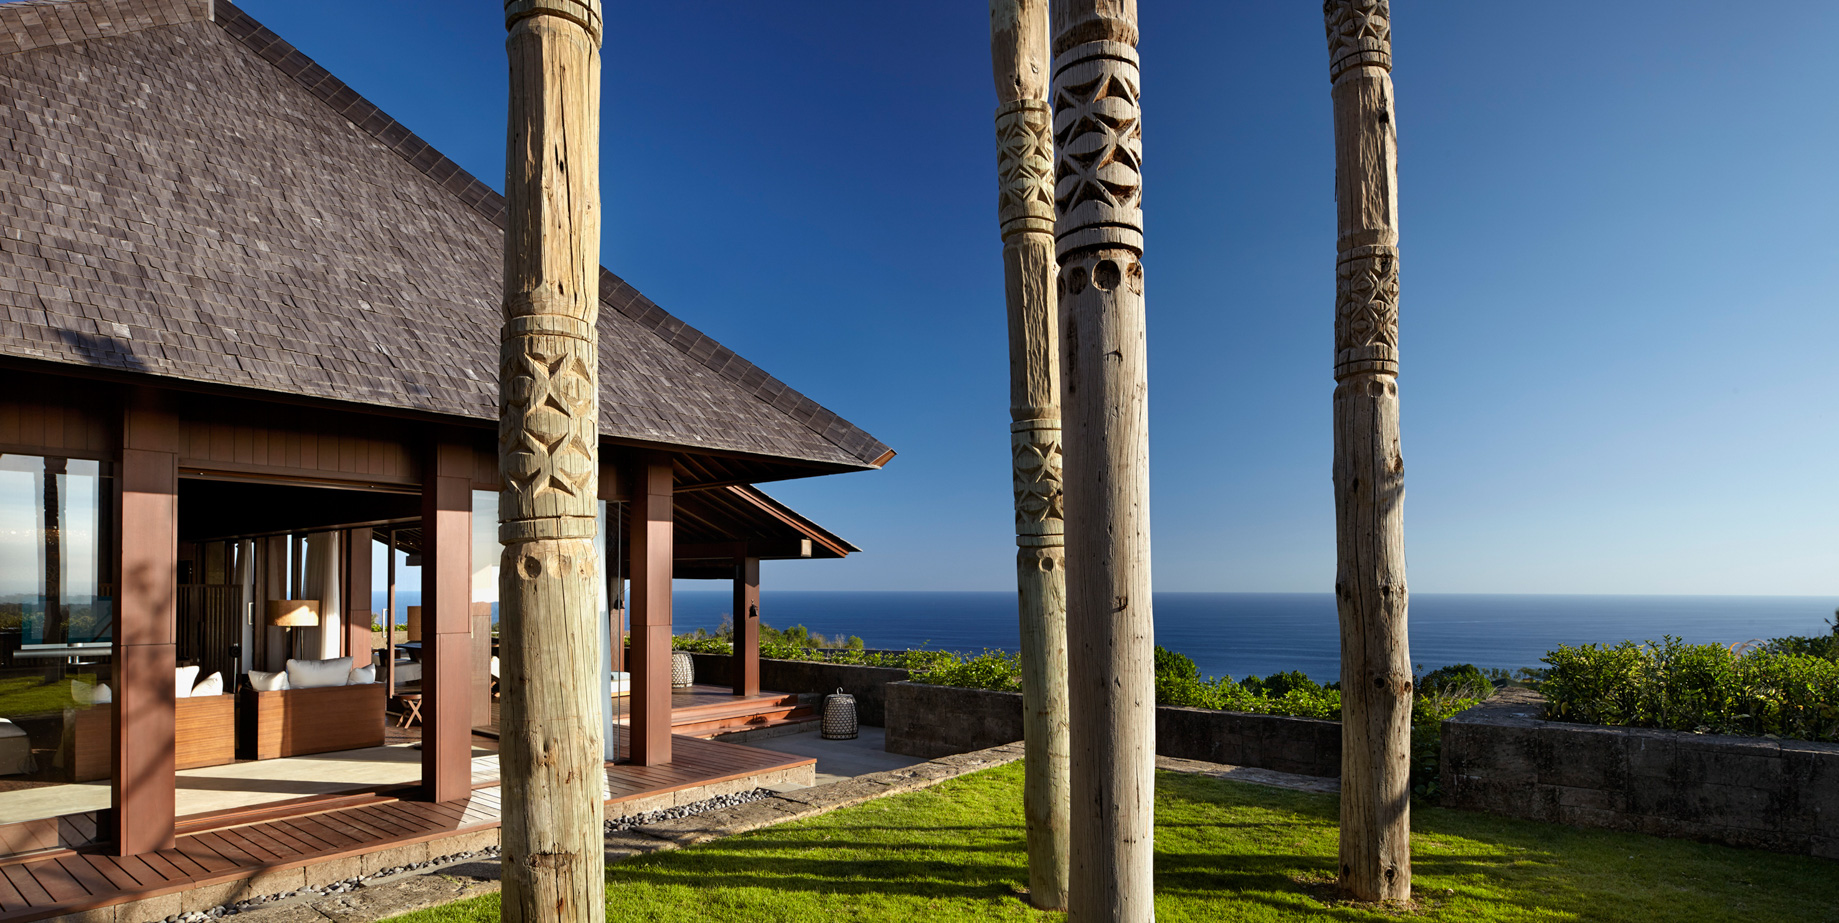 Bvlgari Resort Bali – Uluwatu, Bali, Indonesia – The Mansions Exterior Ocean View